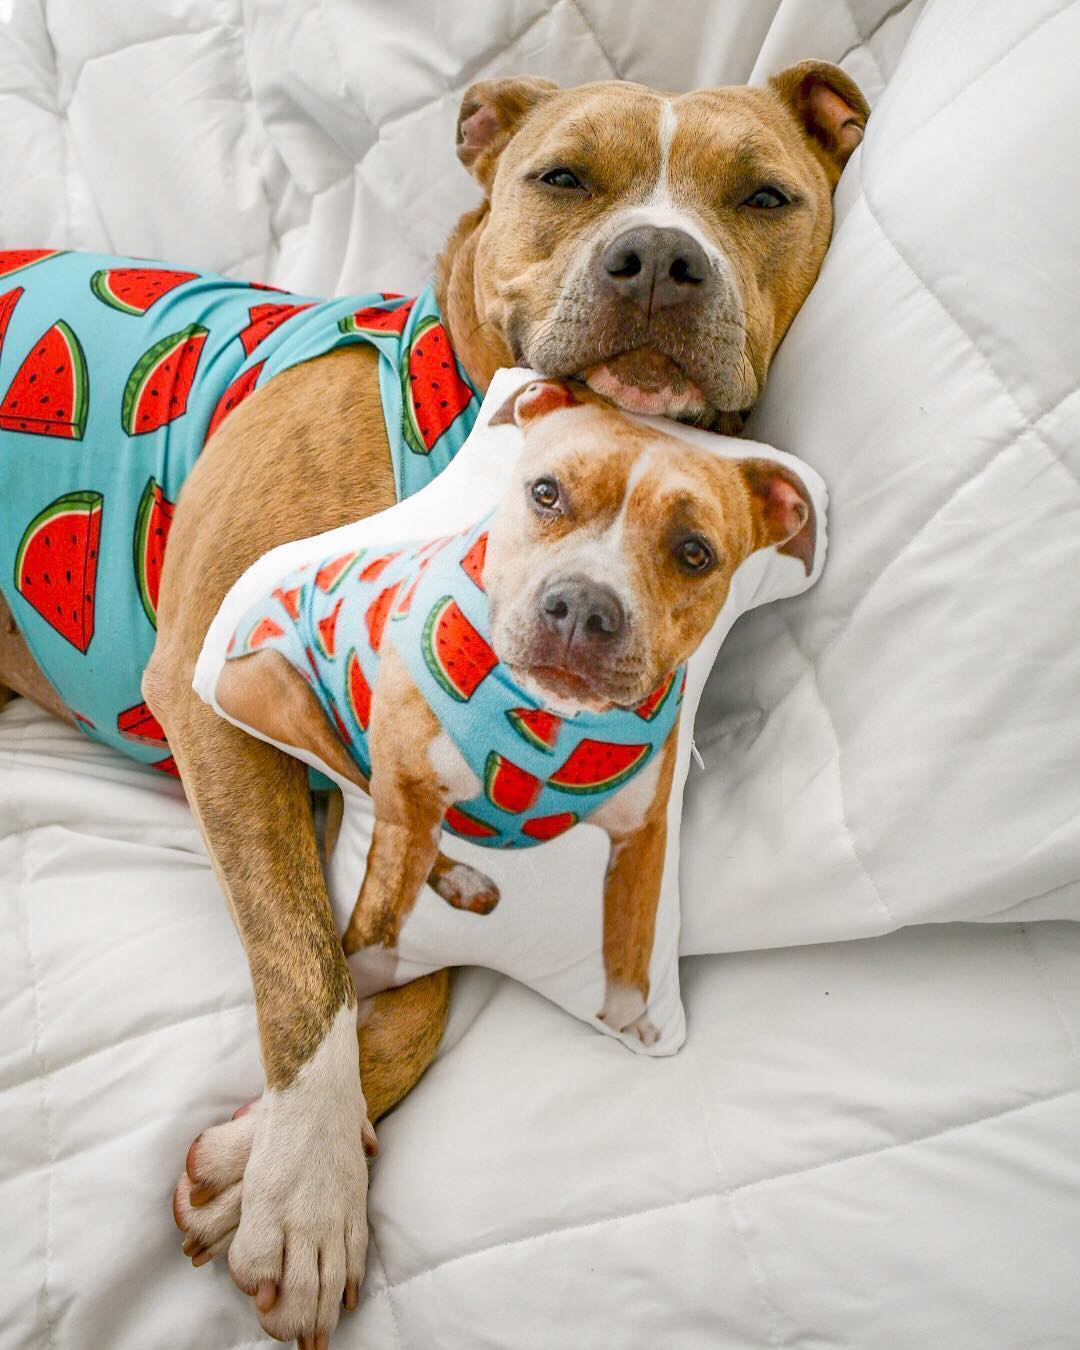 dog proof cushions